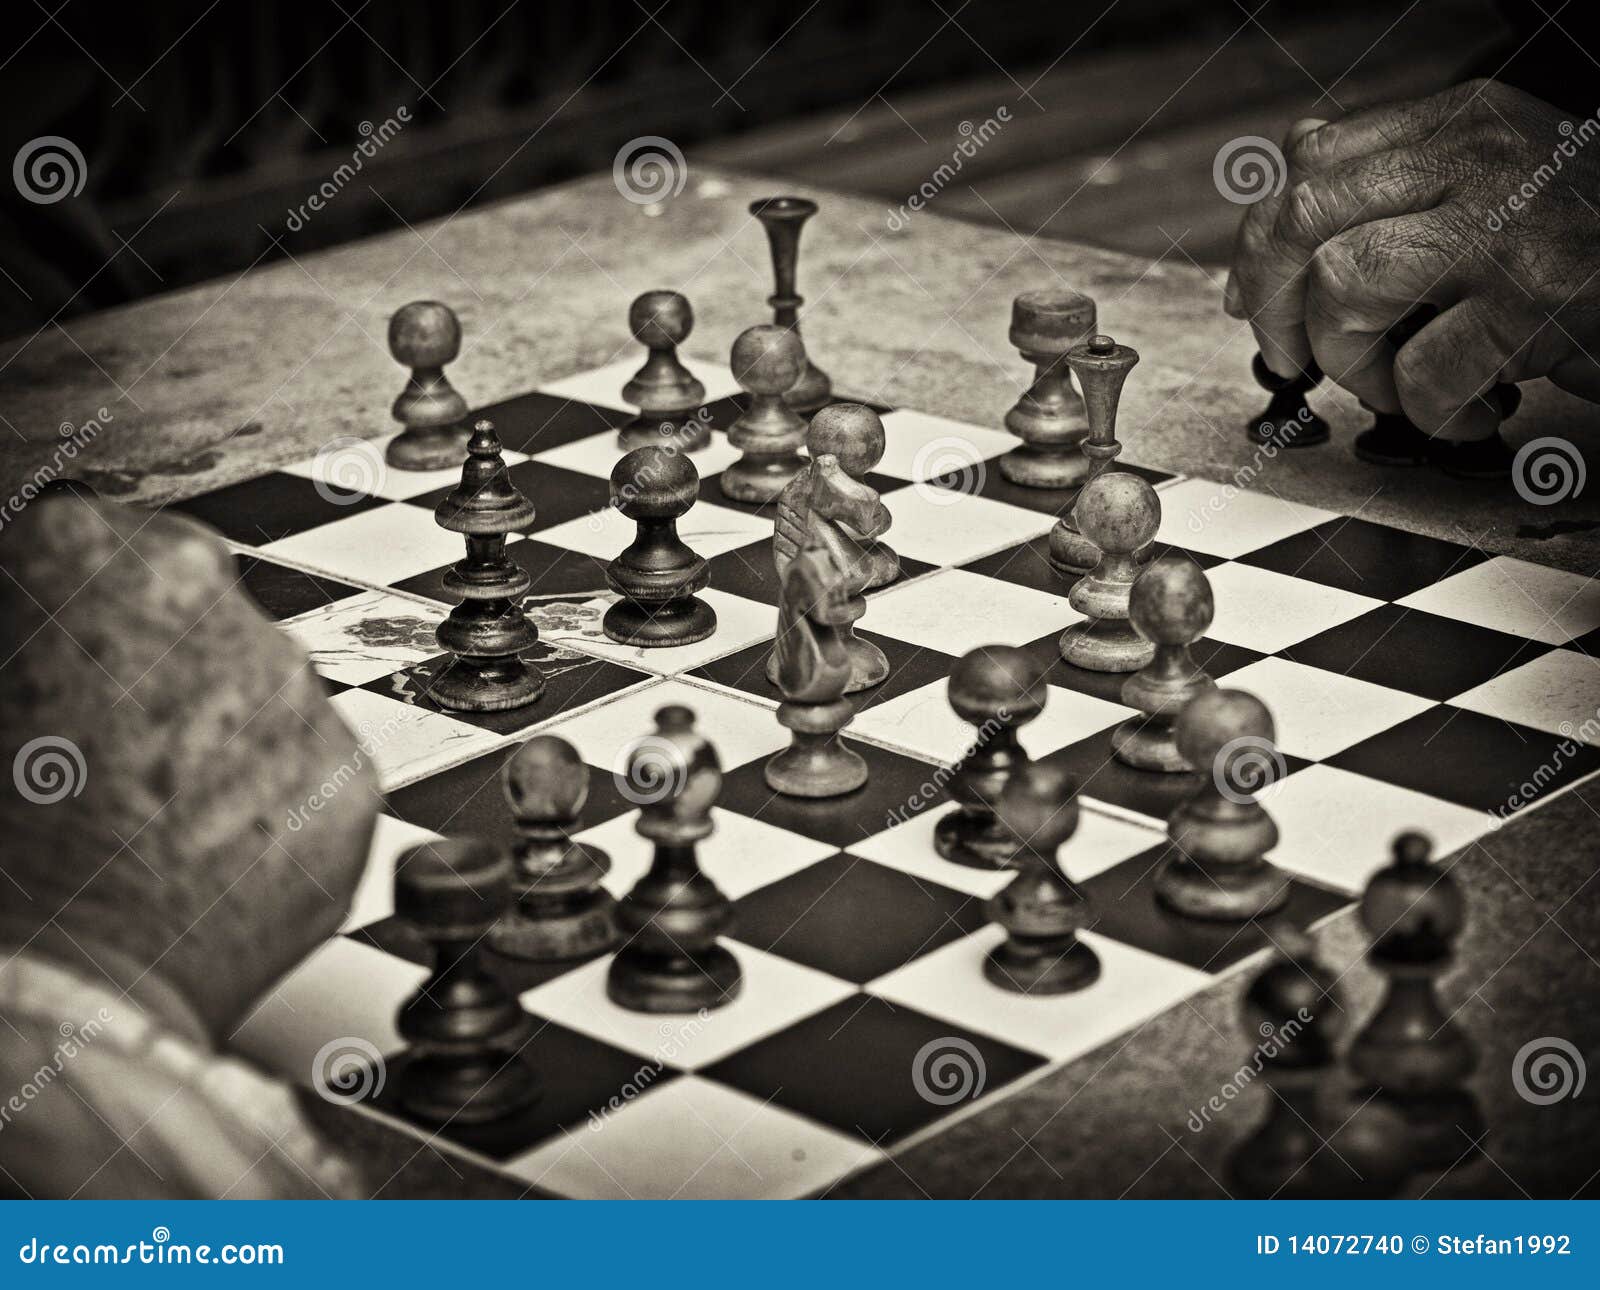 Sénior contemplando próximo movimento no xadrez fotos, imagens de